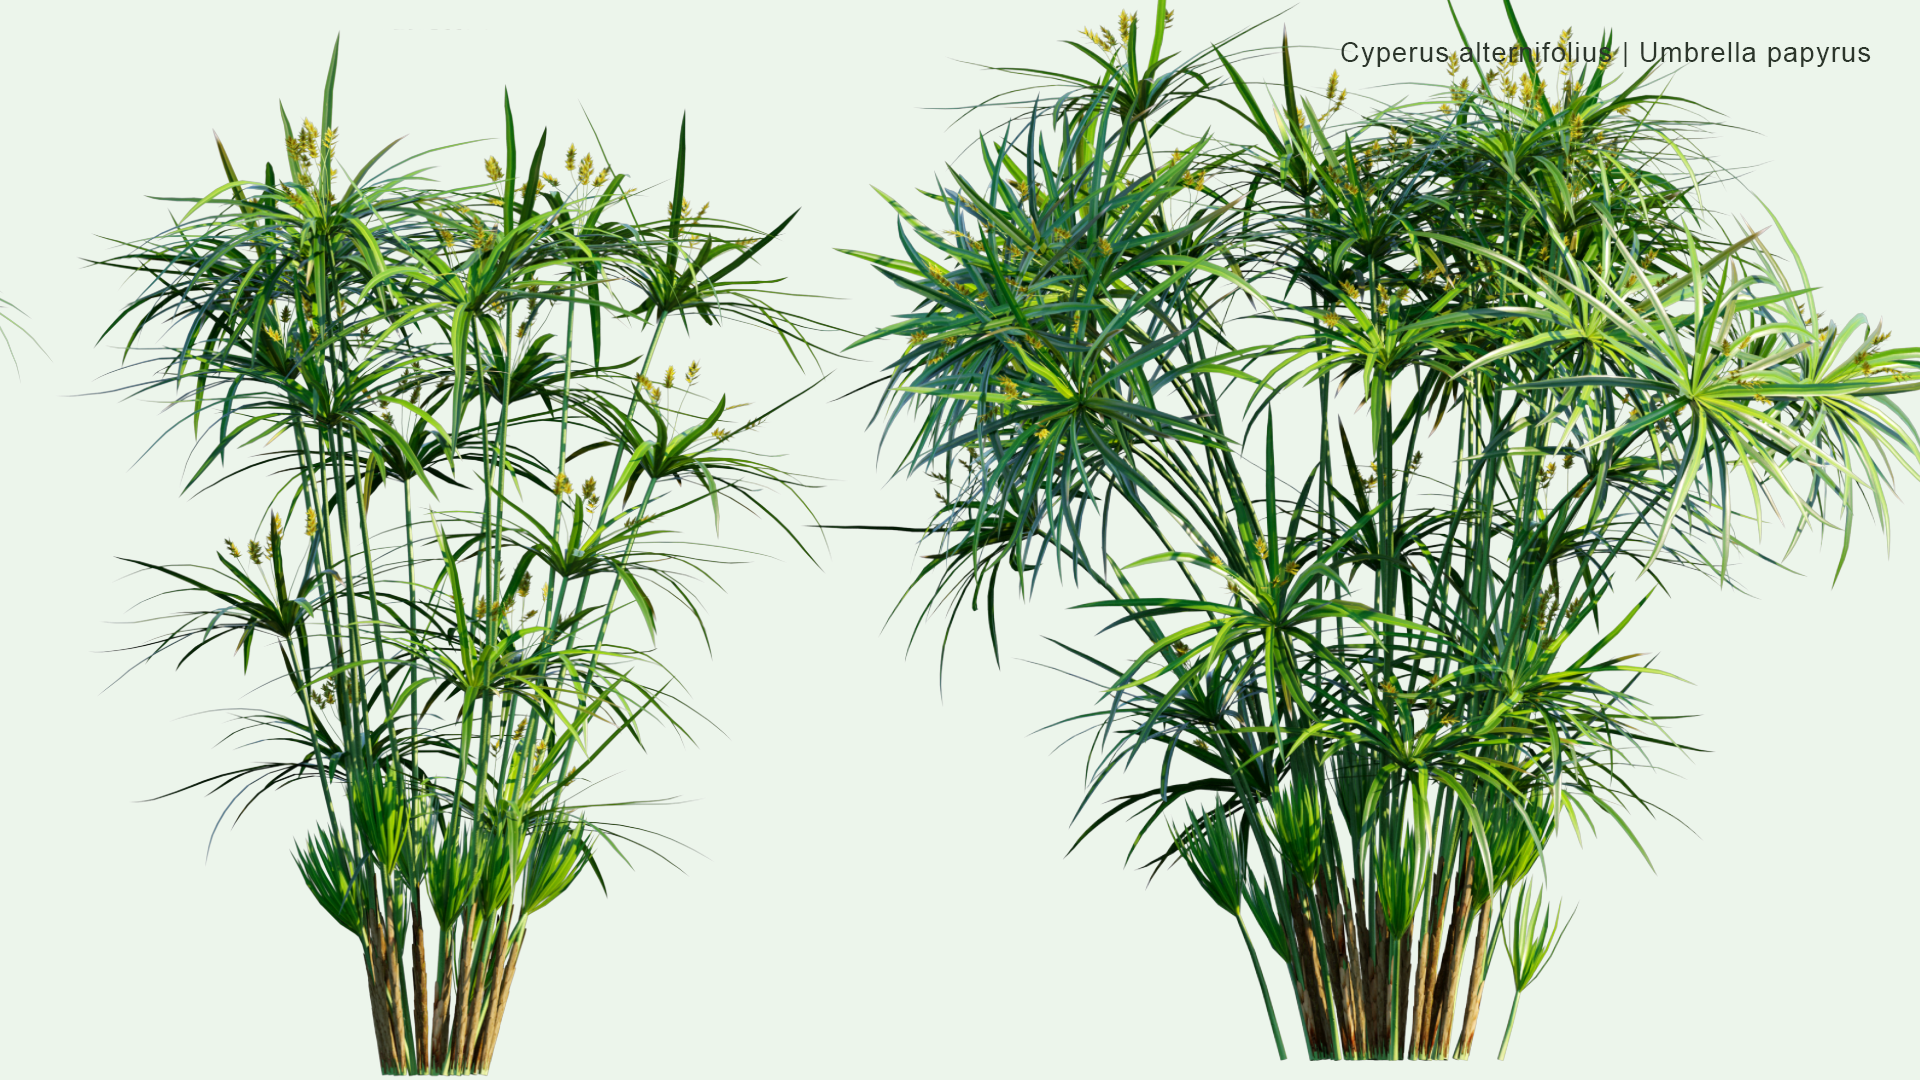 2D Cyperus Alternifolius - Umbrella Papyrus, Umbrella Sedge, Umbrella Palm